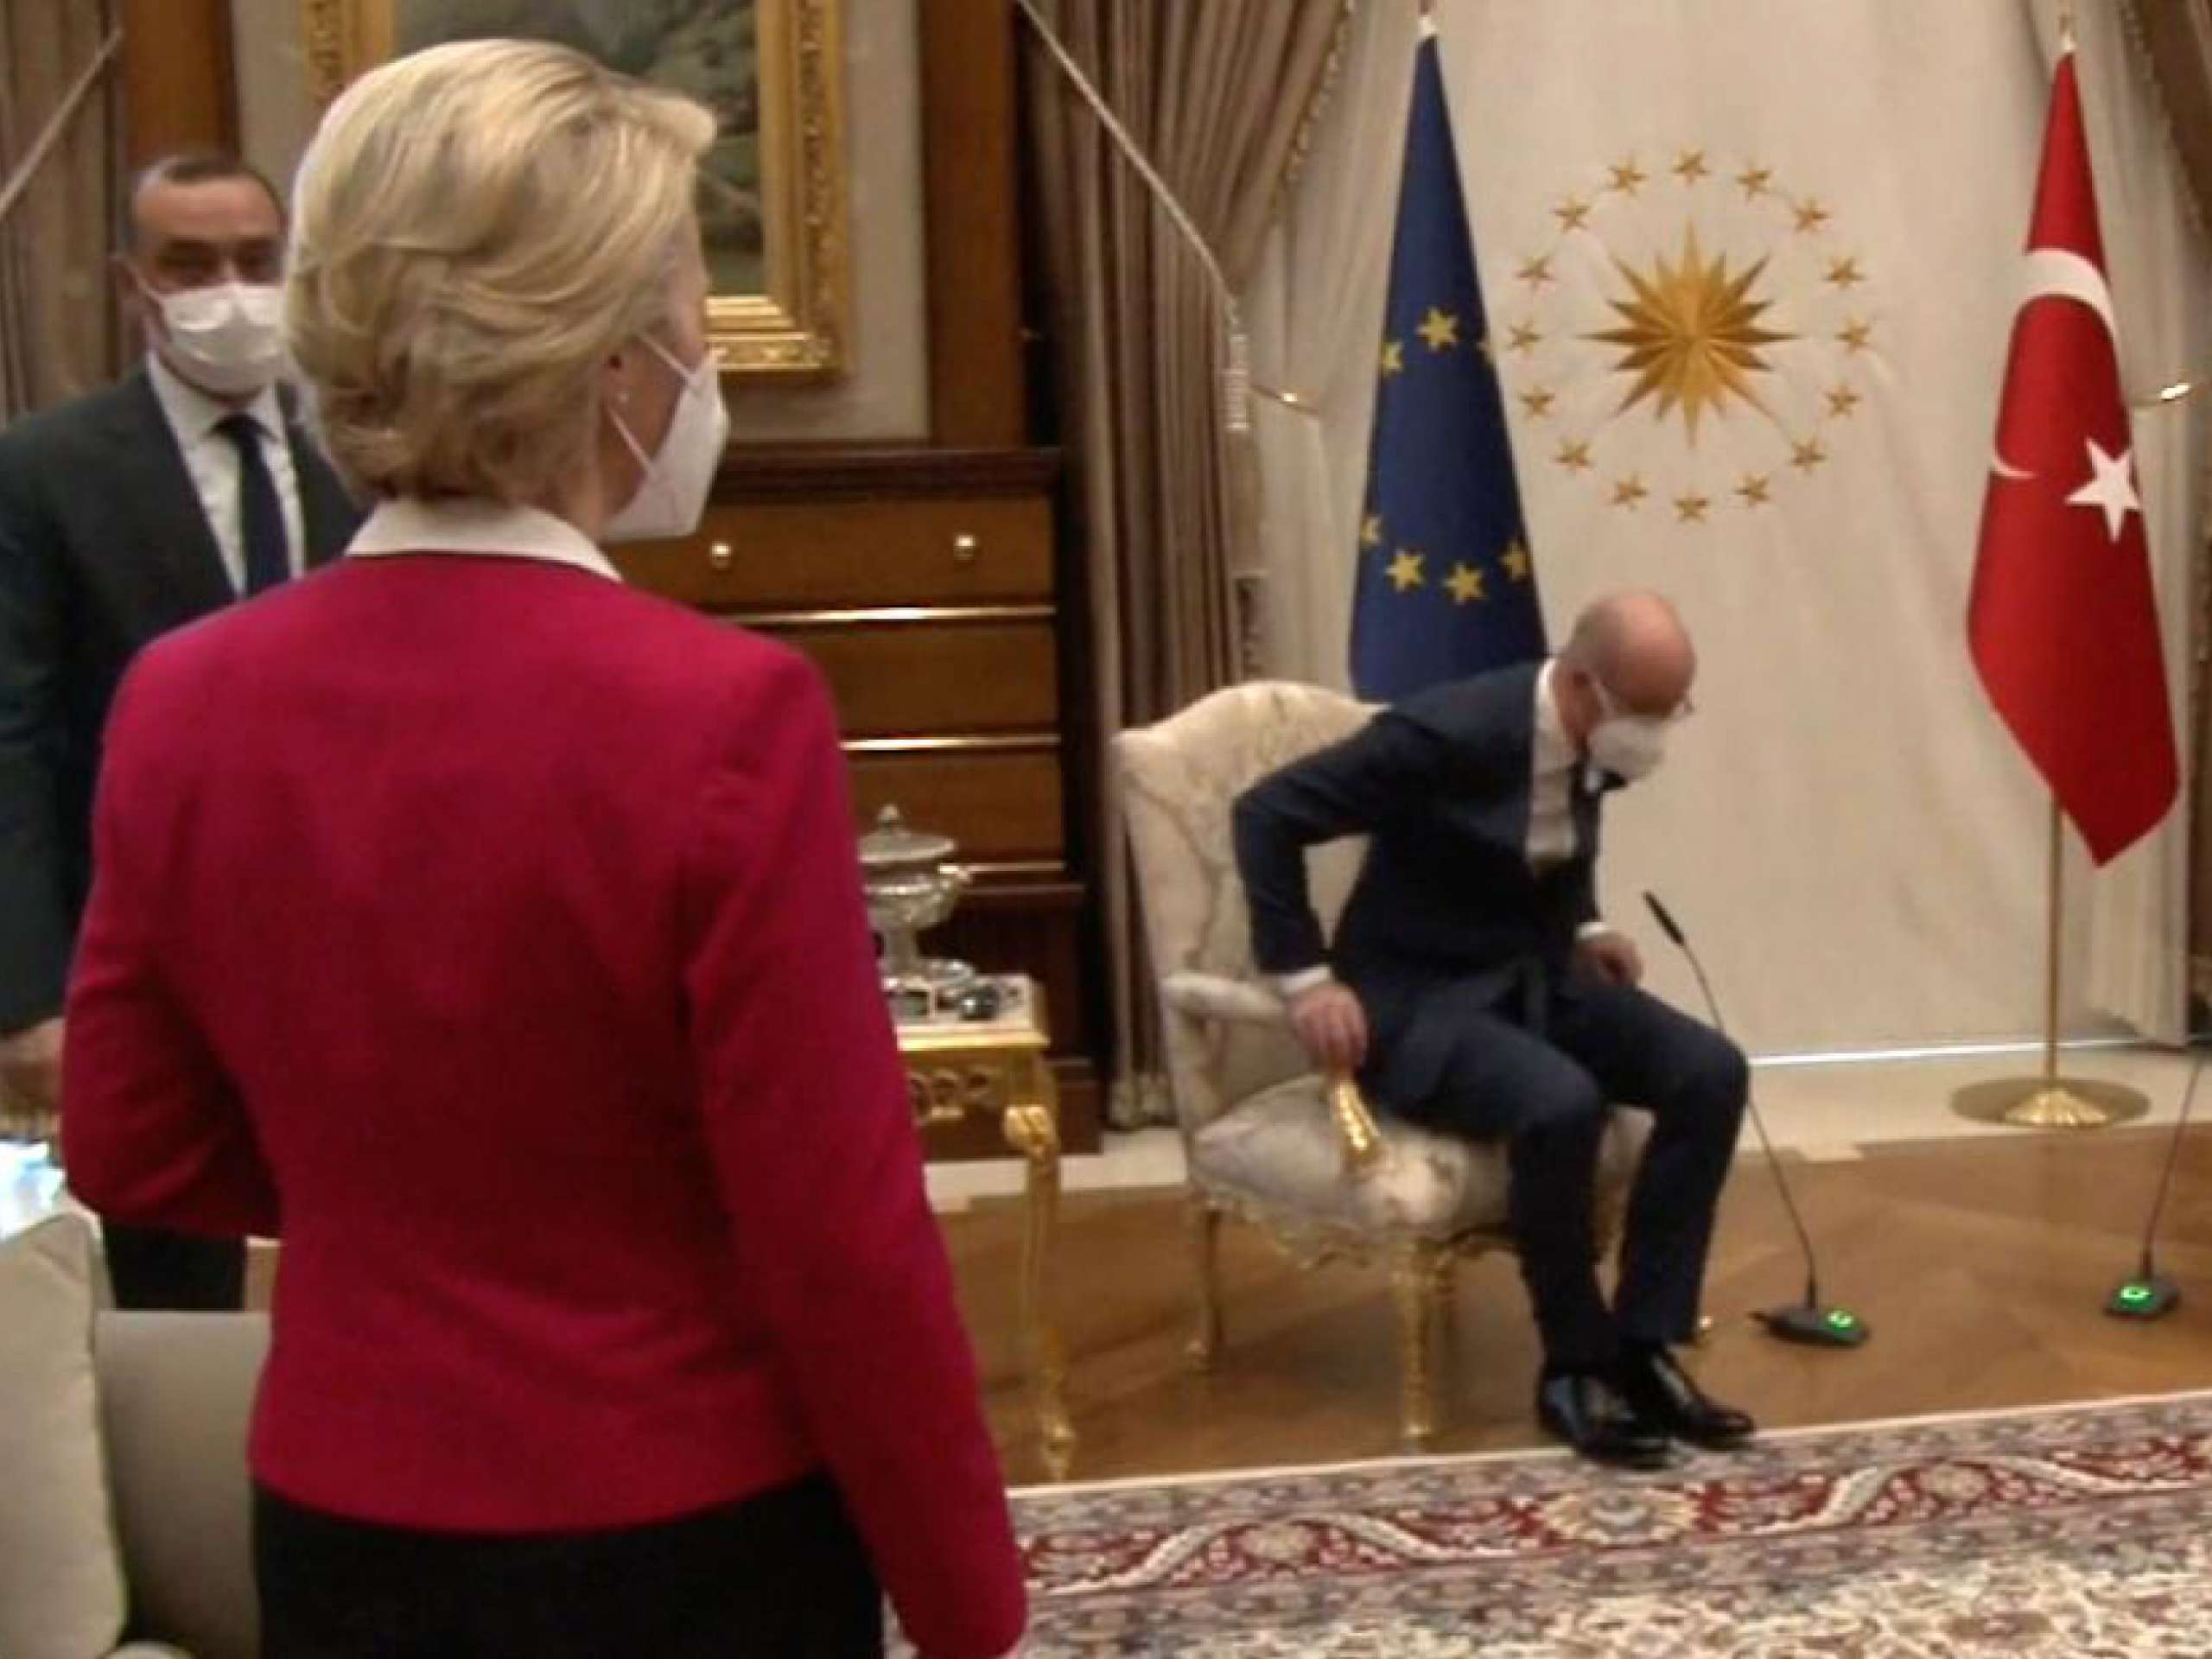 （2021 年歐盟主席 Leyen 與土耳其總統會談時，她被安排在一張不合適且沒有旗幟的沙發上。）